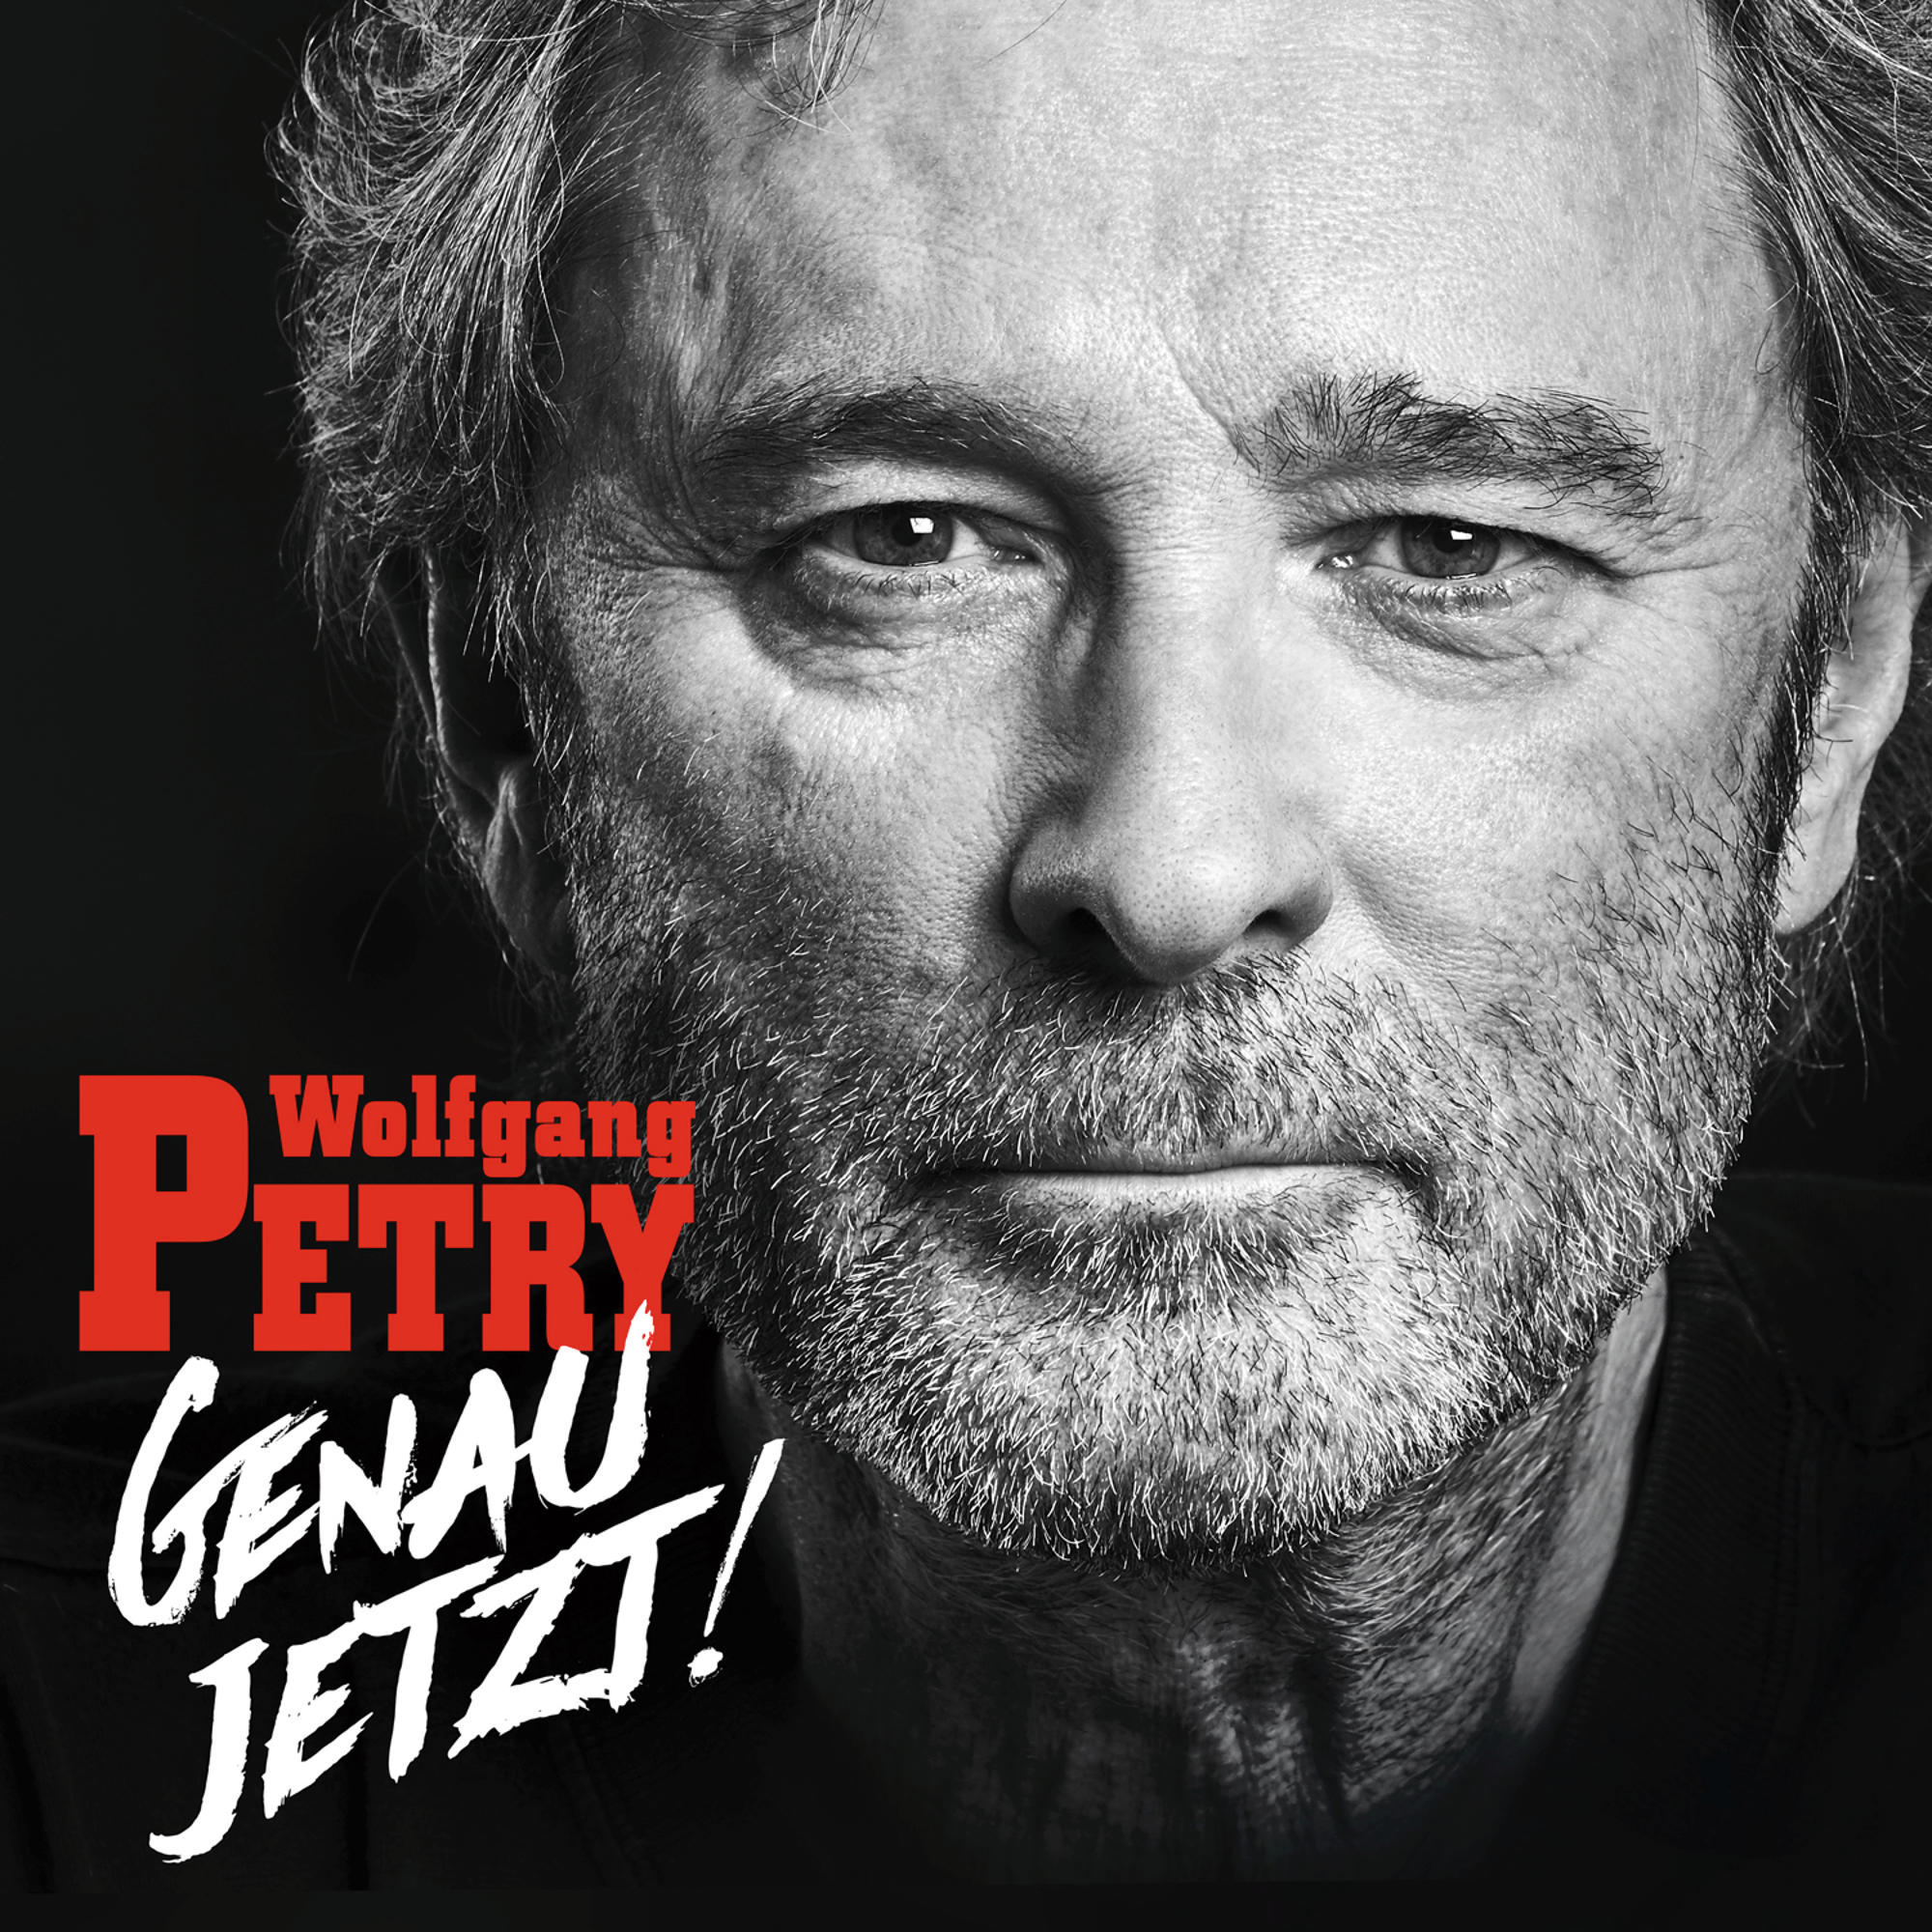 Petry Genau Wolfgang jetzt! - (CD) -